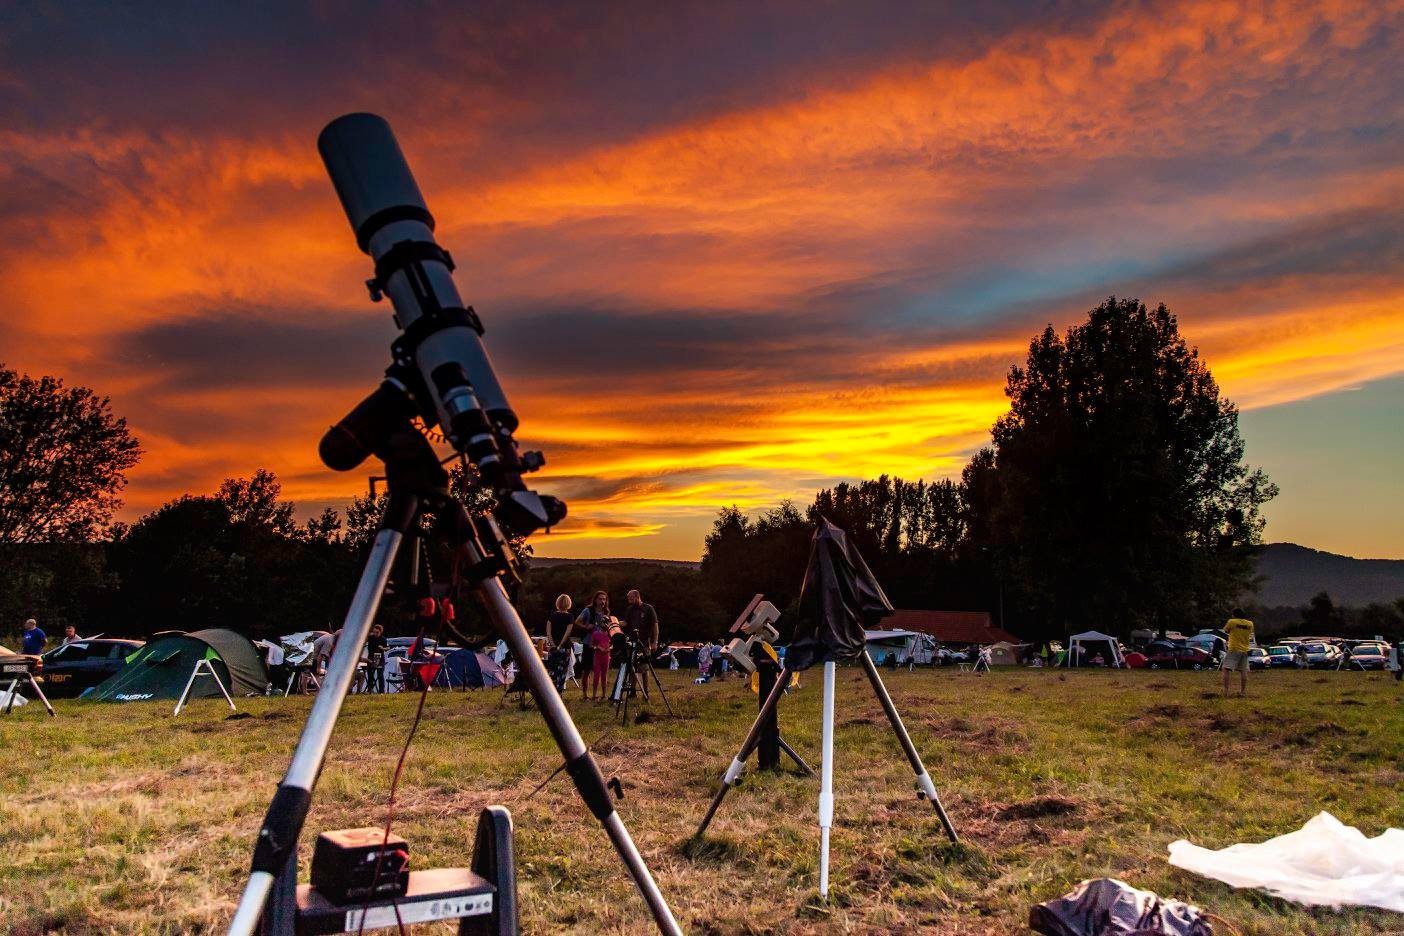 Csillagászat napja - Országszerte távcsöves bemutatókkal várják az érdeklődőket szombaton